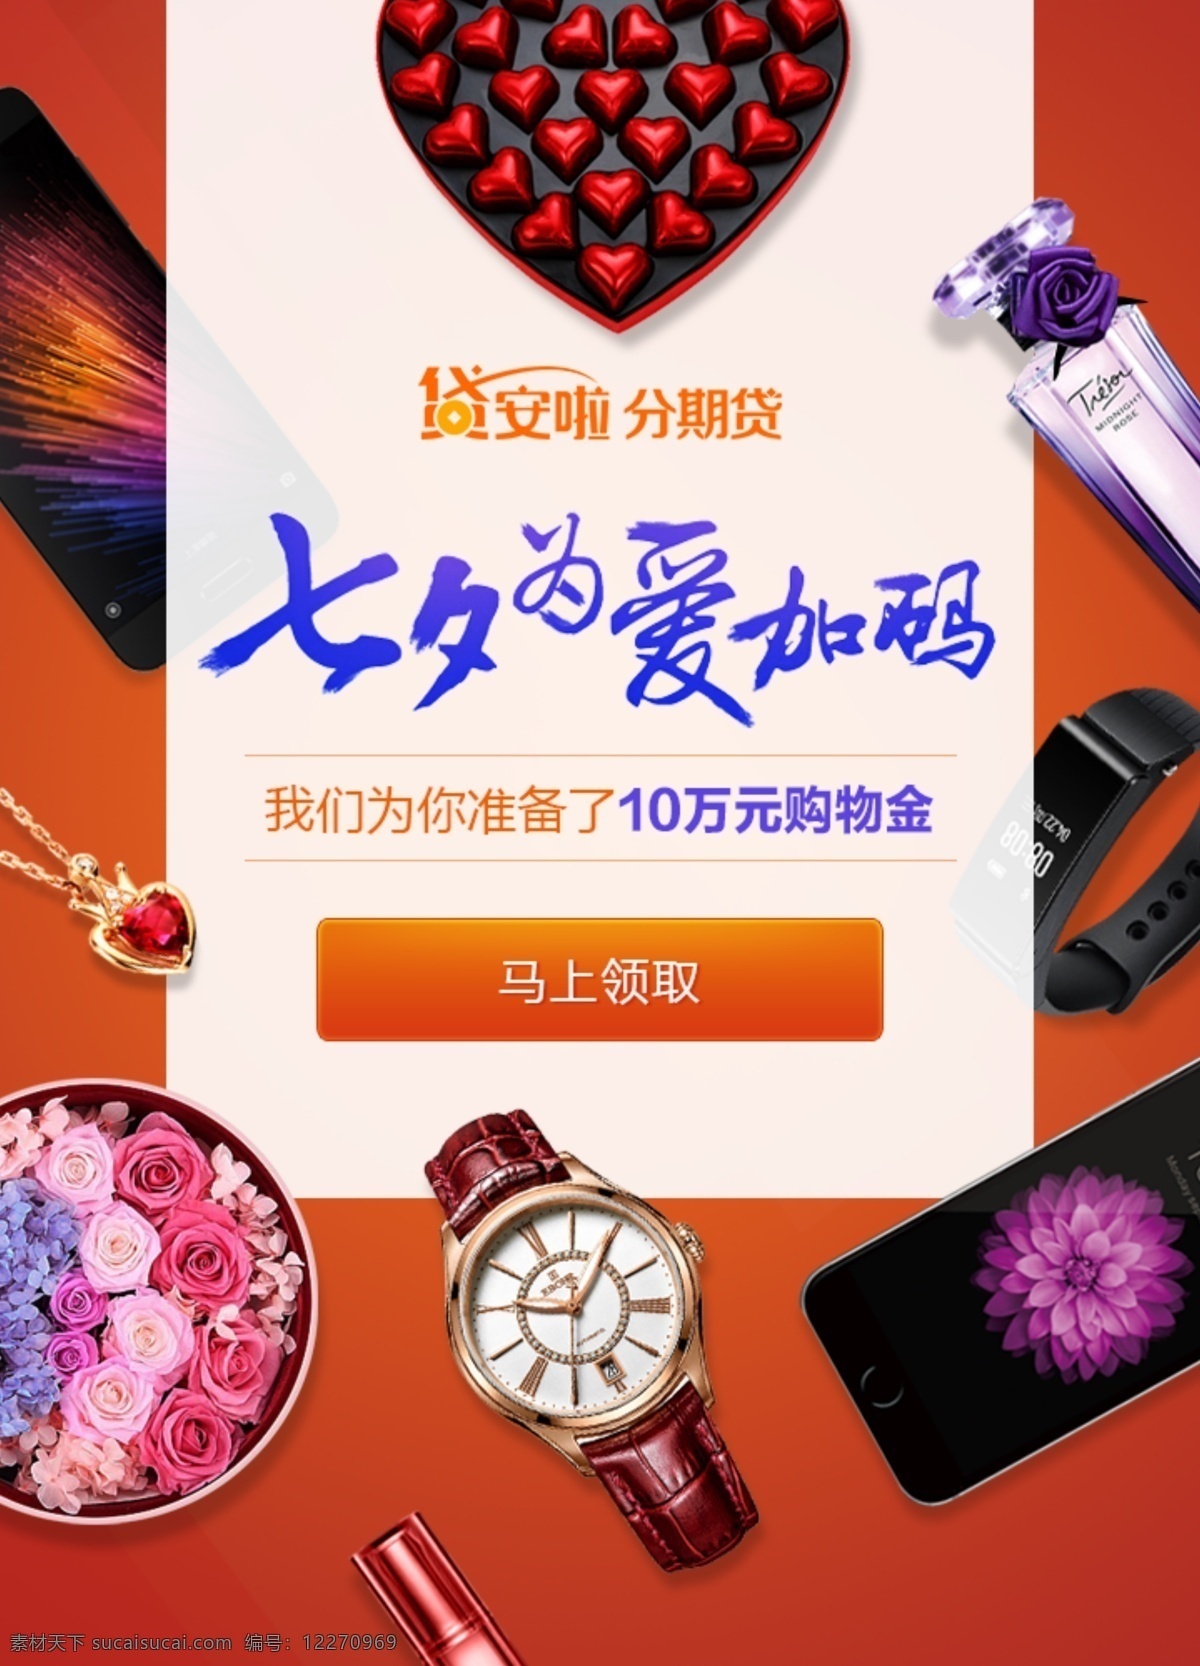 七夕节分期贷 七夕 化妆品 购物 橙色 淘宝 京东 节日促销模板